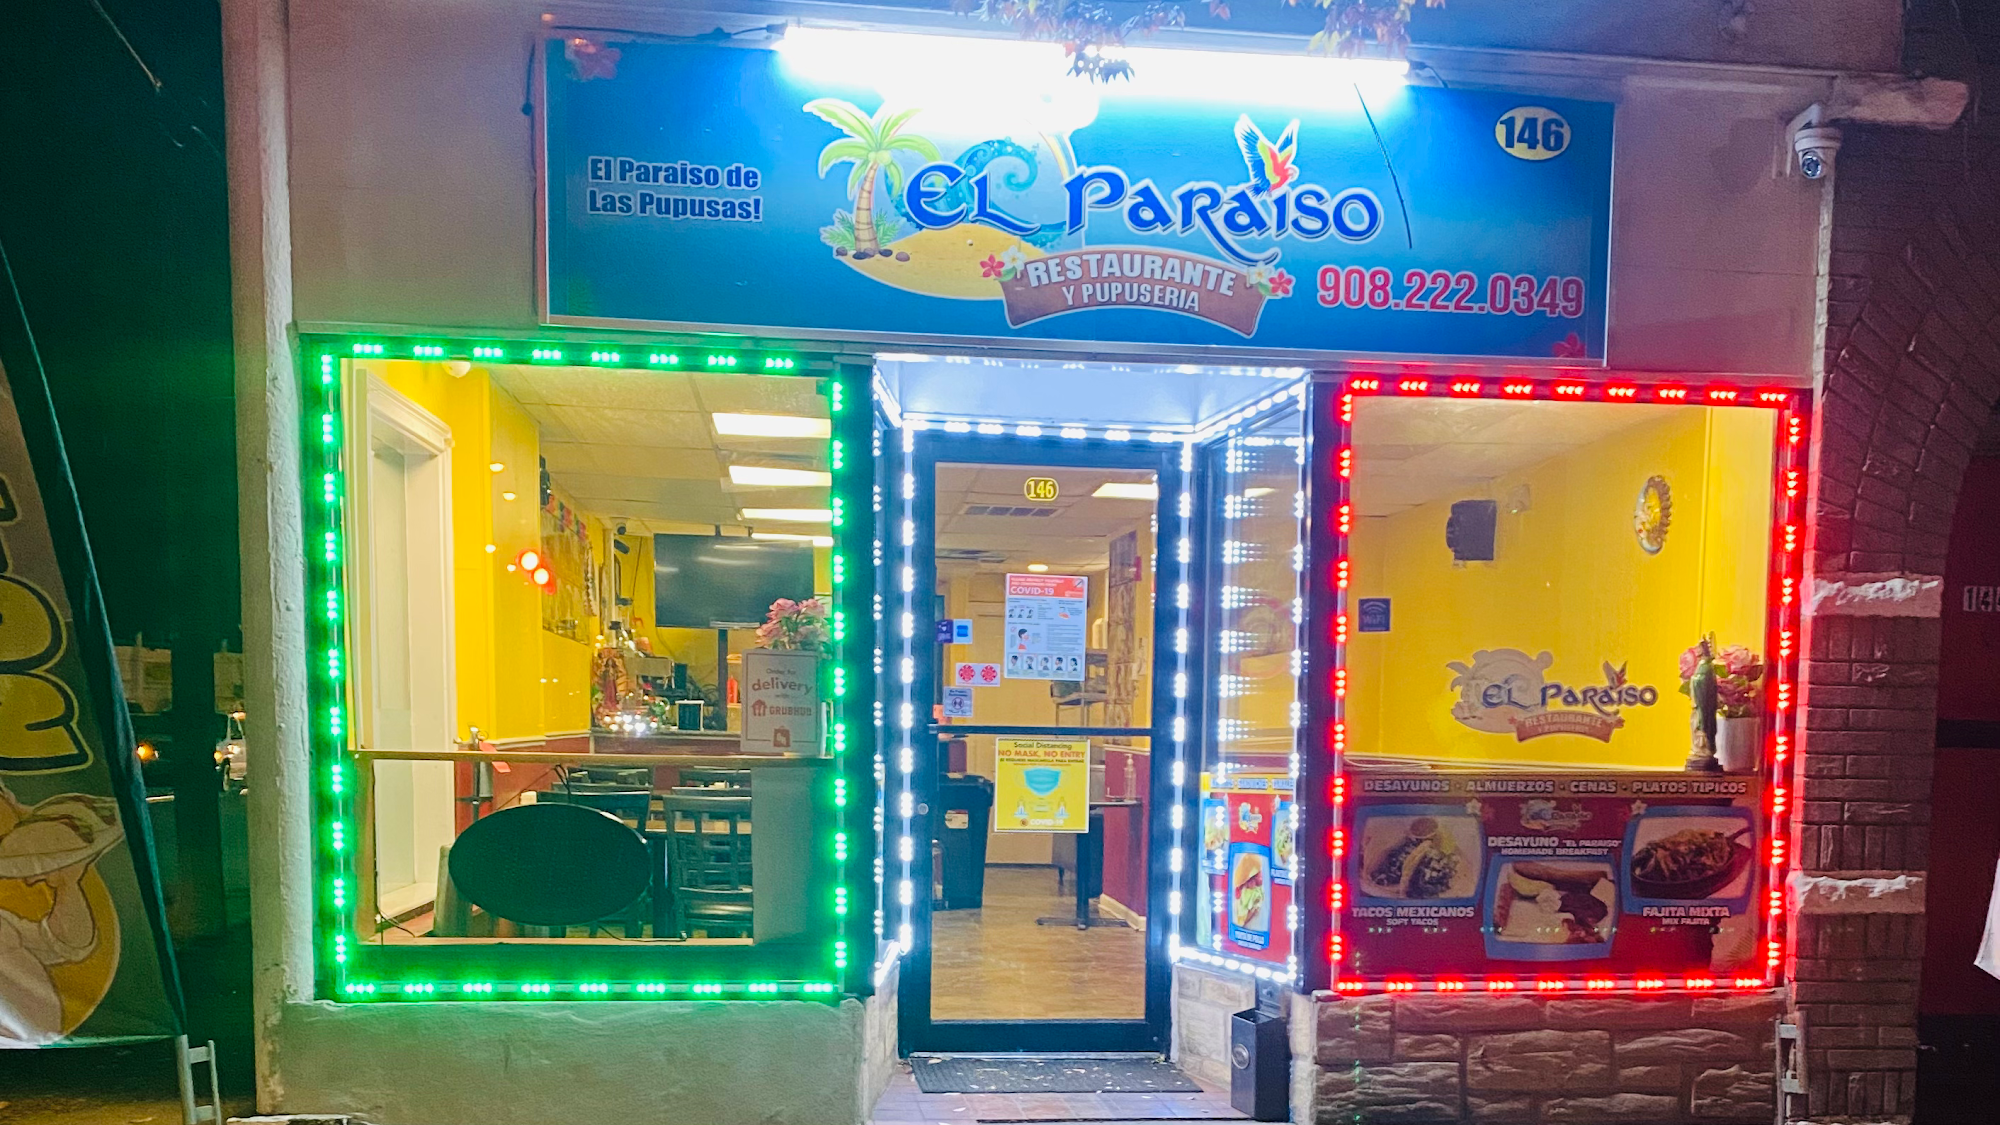 El Paraiso Mex